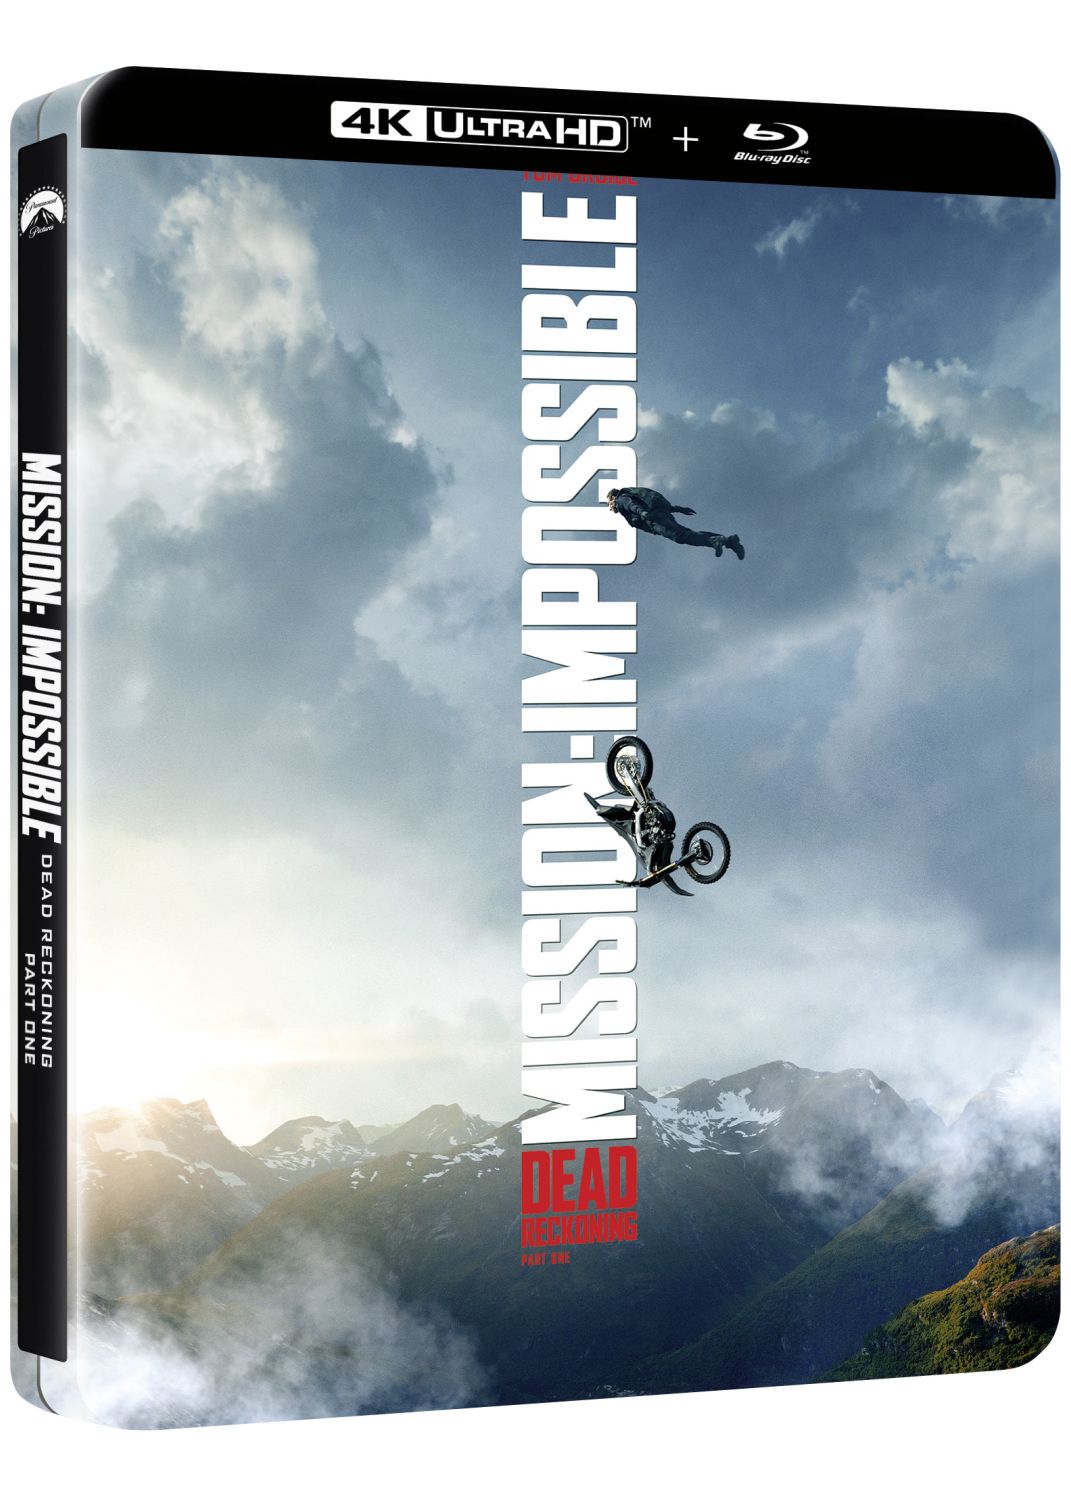 Coffret Blu-ray Mission Impossible - L'intégrale des 6 films –